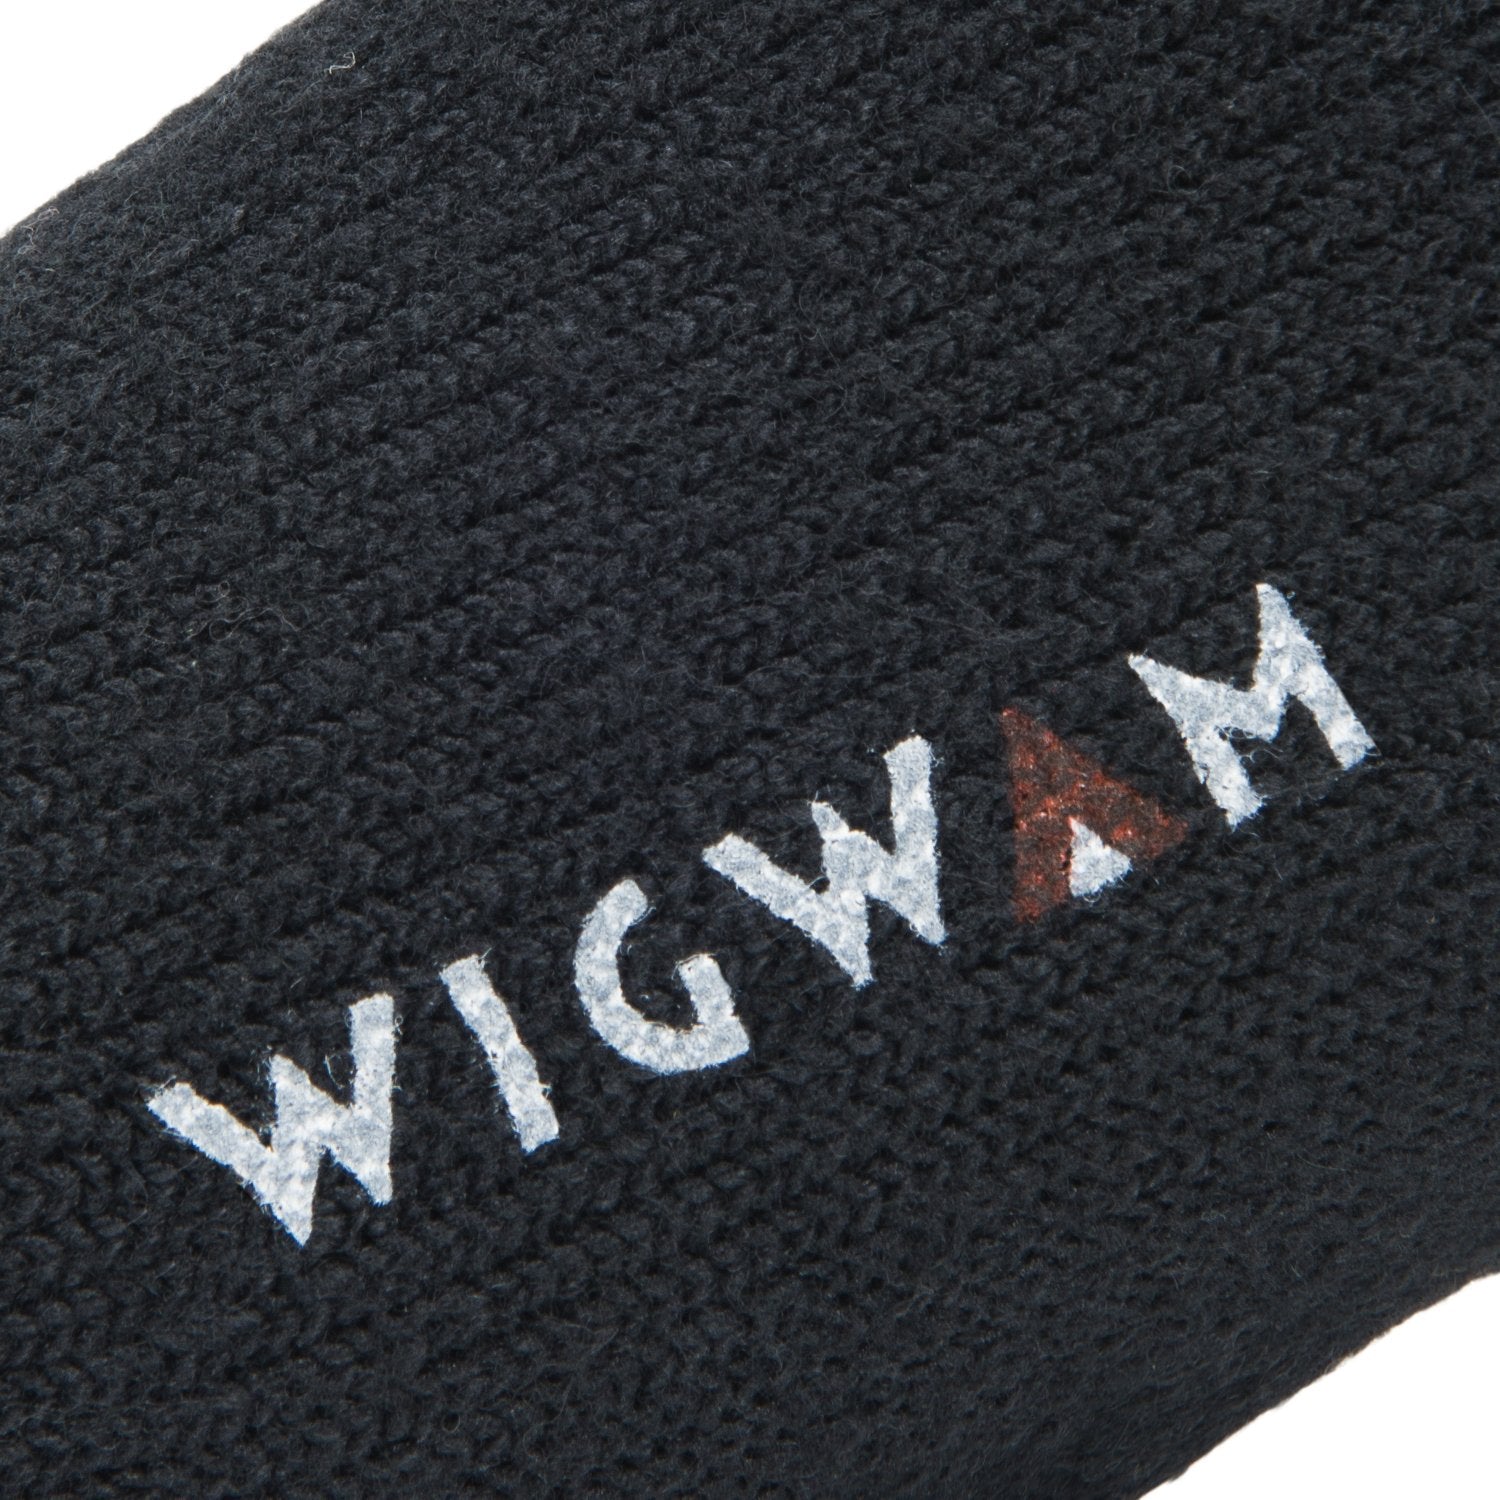 40 Below Wool Heavyweight Sock - Black knit-in logo - made in The USA Wigwam Socks